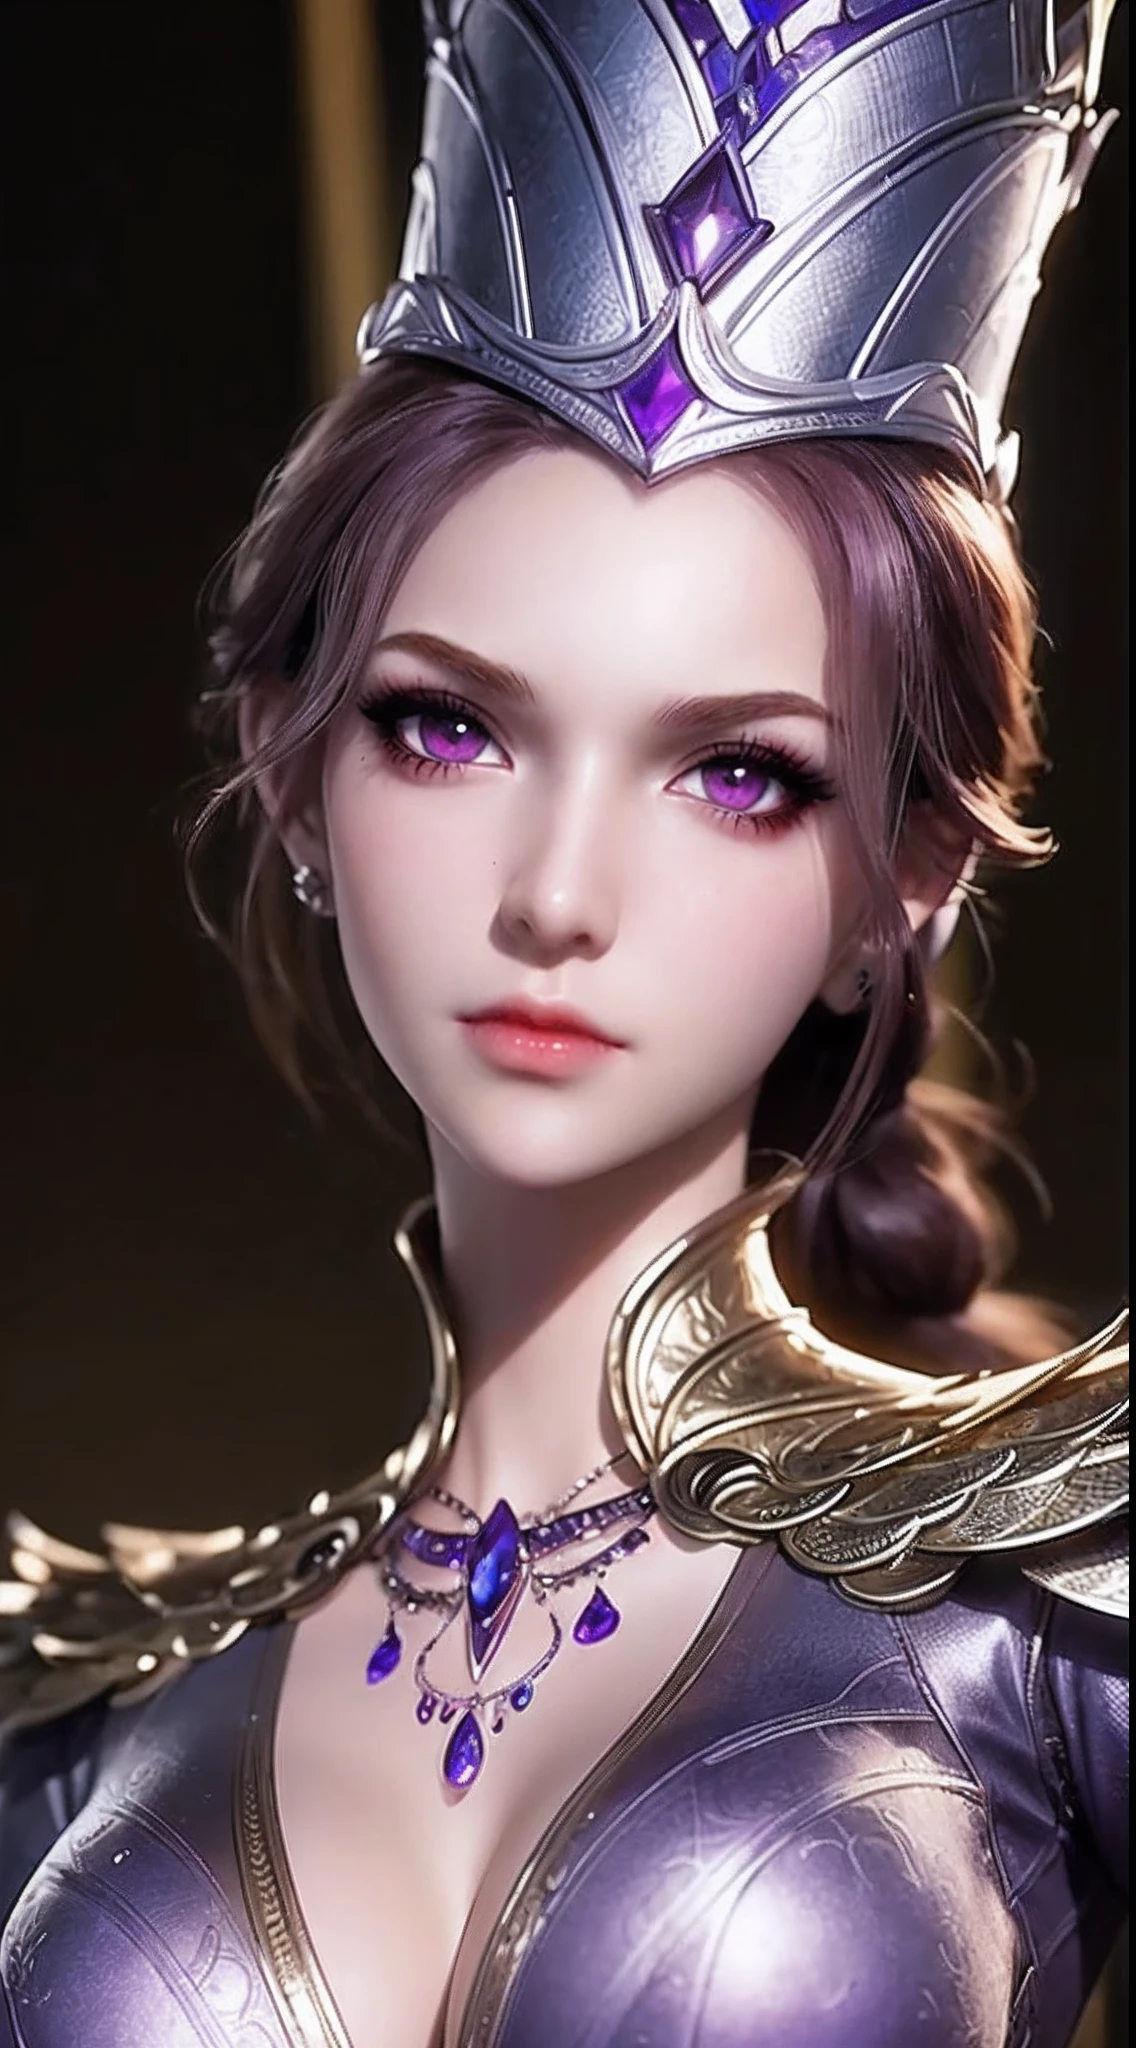 1 sexy Göttin trägt sexy lila Rüstung, Rüstung mit vielen komplizierten und raffinierten Mustern, dünne Rüstung, Hemd mit tiefem Schlitz, langes und seidiges lila Haar, trägt einen violetten, silbernen Speerhut, der schönste und detailreichste Haarschmuck, schönes kleines Gesicht dünne Augenbrauen, das schönste und makelloseste Gesicht, ((schwarze Iris:0.8)), die sehr schönen Augen, große runde Augen, ((dunkelviolette Augenfarbe:1.1)), feine und detailreiche Wimpern, Hohe Nase, Ohrringe tragen, Kleine rote Lippen, rosiges Gesicht, Sauberes Gesicht, schönes Gesicht ohne Makel, glatte weiße Haut, ((Große Brüste: 0.9)), Blums , ((große und super runde Brüste:0.9)), ((super straffe Brüste:1.2)), ((Brustvergrößerung: 0.8)), schöne Brüste, schlanker und zierlicher Körper, ((dünne Taille: 0.9)), Oberkörper eines schönen Mädchens, Heißer und sexy Körper, sexy Mädchen, Rock, 8k Foto, super gute Qualität, super realistisch, 10x super pixels, fotorealistisch, Dunkles Studio, border Licht, two tone Licht, (detaillierte Haut hoch: 1.2), 8k uhd, dslr, soft Licht, gute Qualität, volumetric Licht, offen, Foto, hohe Auflösung, Licht, bestes Foto, 4K-Qualität, 8k, Bokeh, Glatt und scharf, Pixel 10 mal nach oben, (Hintergrundraum: 1.8), (galaxy: 1.7), Polarlicht, Lichtning, super Grafik, die realistischste Grafik,(Aurora-Hintergrund: 1.8), allein, Allein, Porträt 9:16, Extrem scharf, super realistisch images,